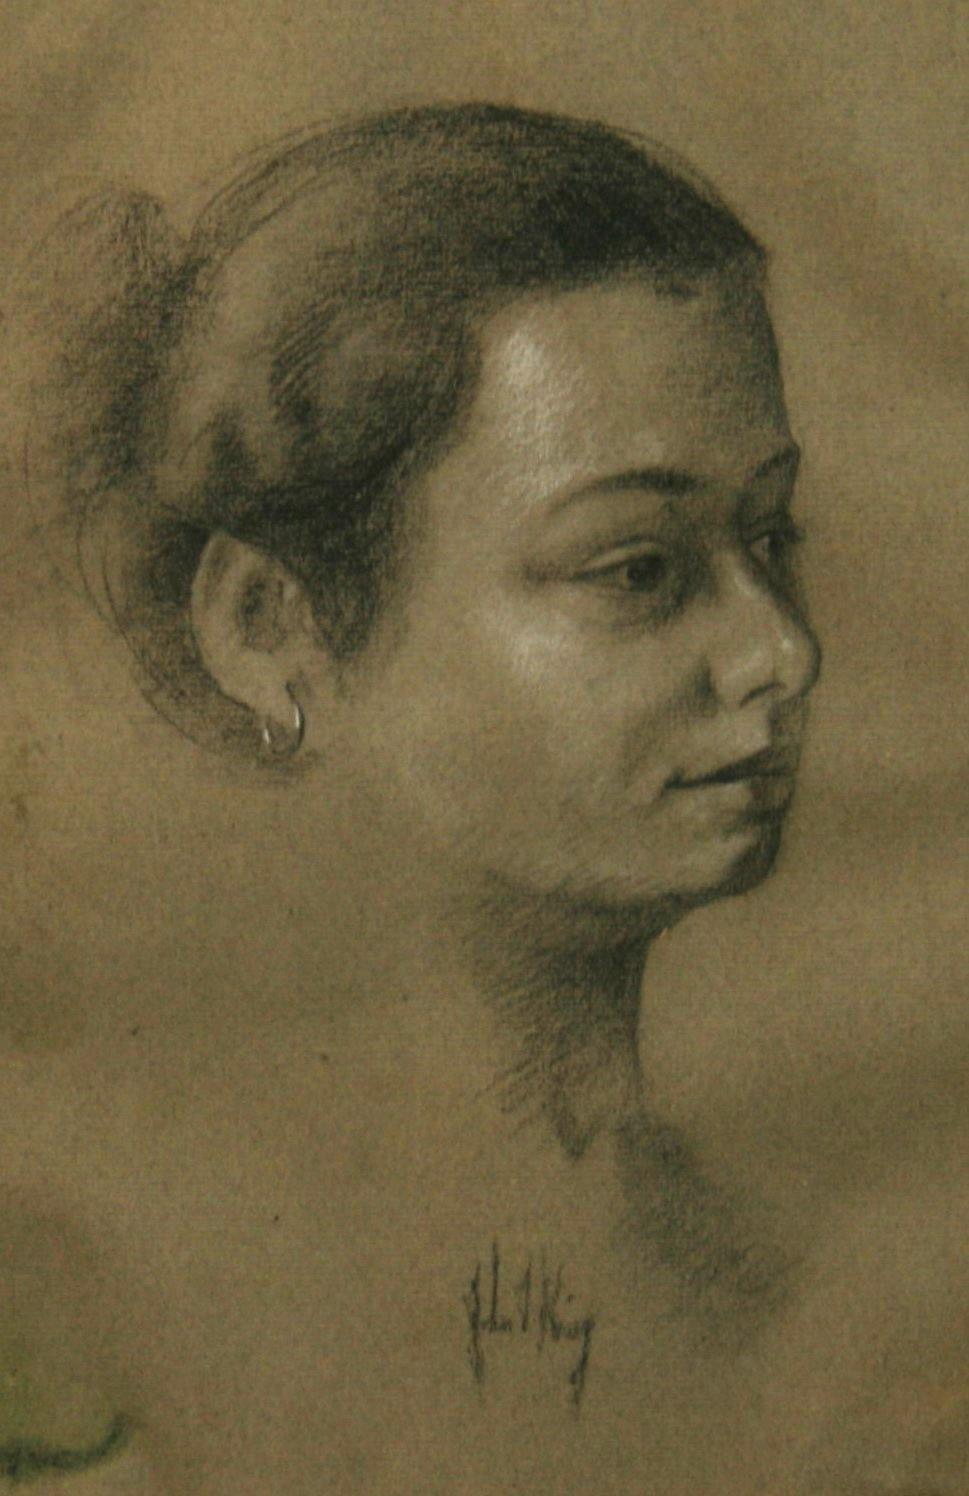 3878 Portrait féminin au fusain sur papier
Encadré dans un cadre en bois noir. Taille de l'image : 12.5x9.5